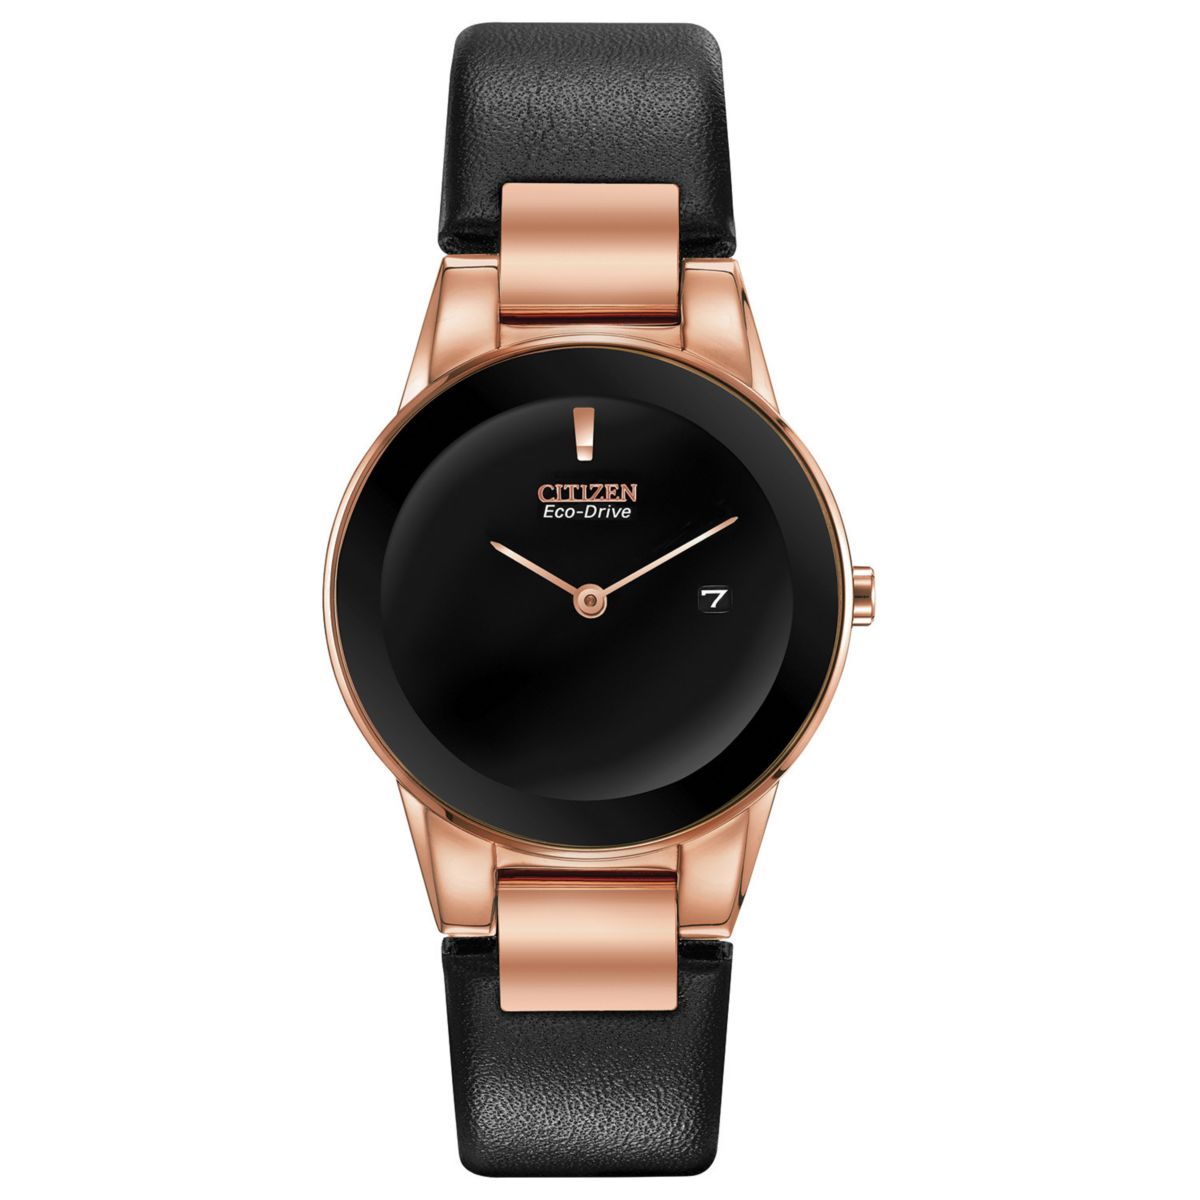 Женские часы Citizen Eco-Drive Axiom с черным кожаным покрытием - GA1058-16E Citizen